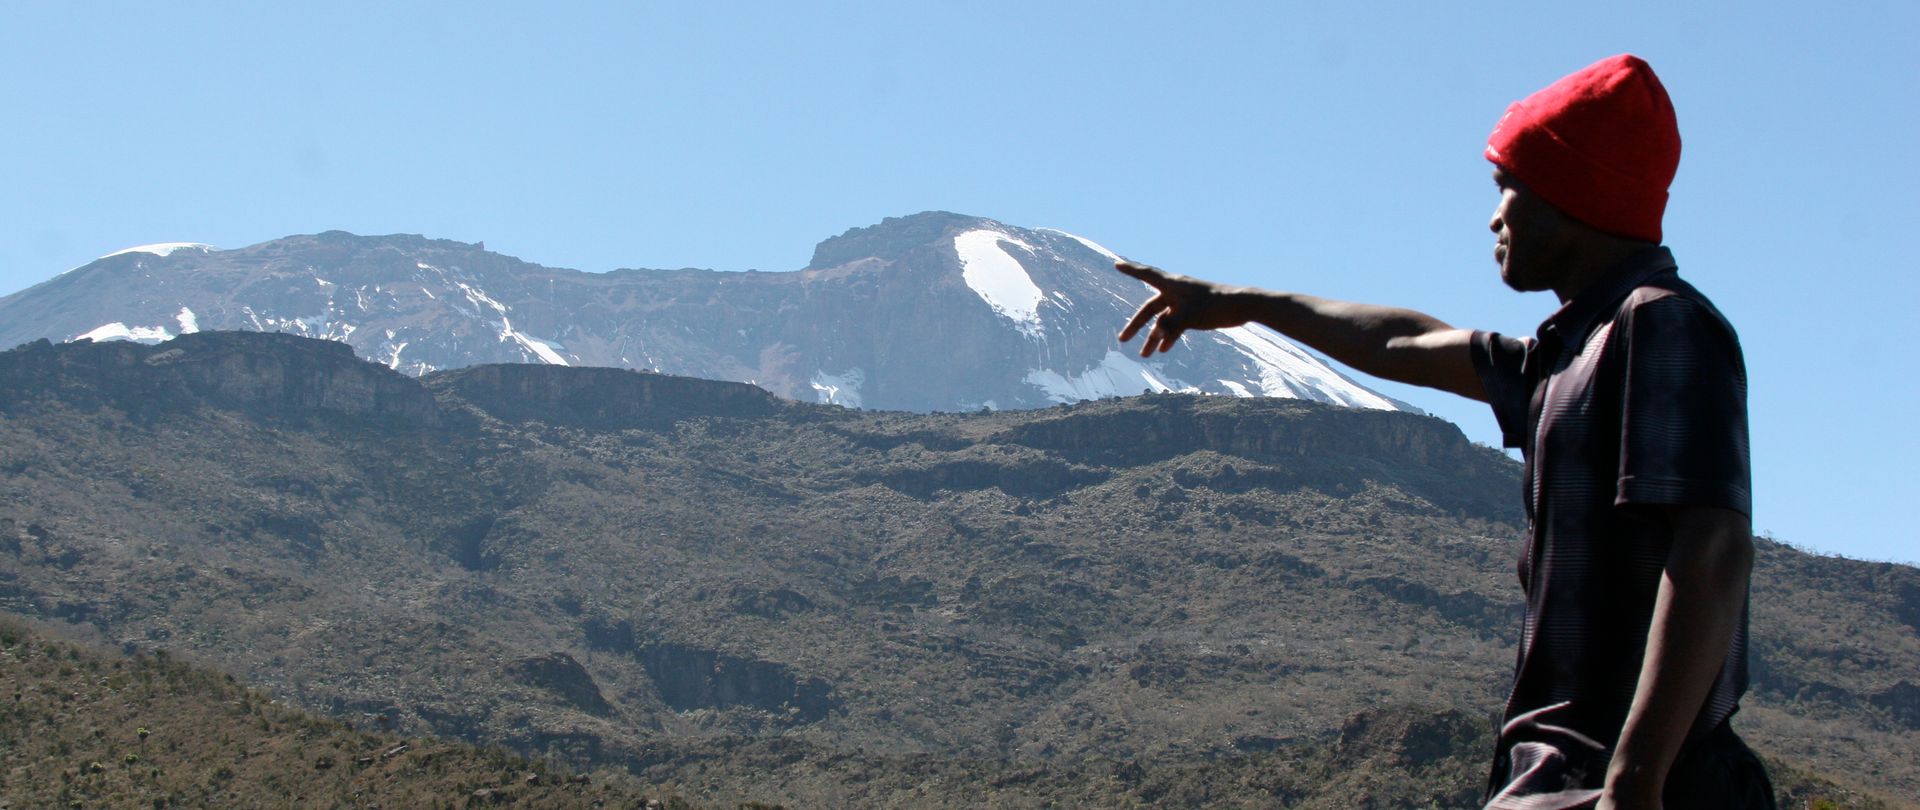 Porteur pointant le sommet du Kilimandjaro